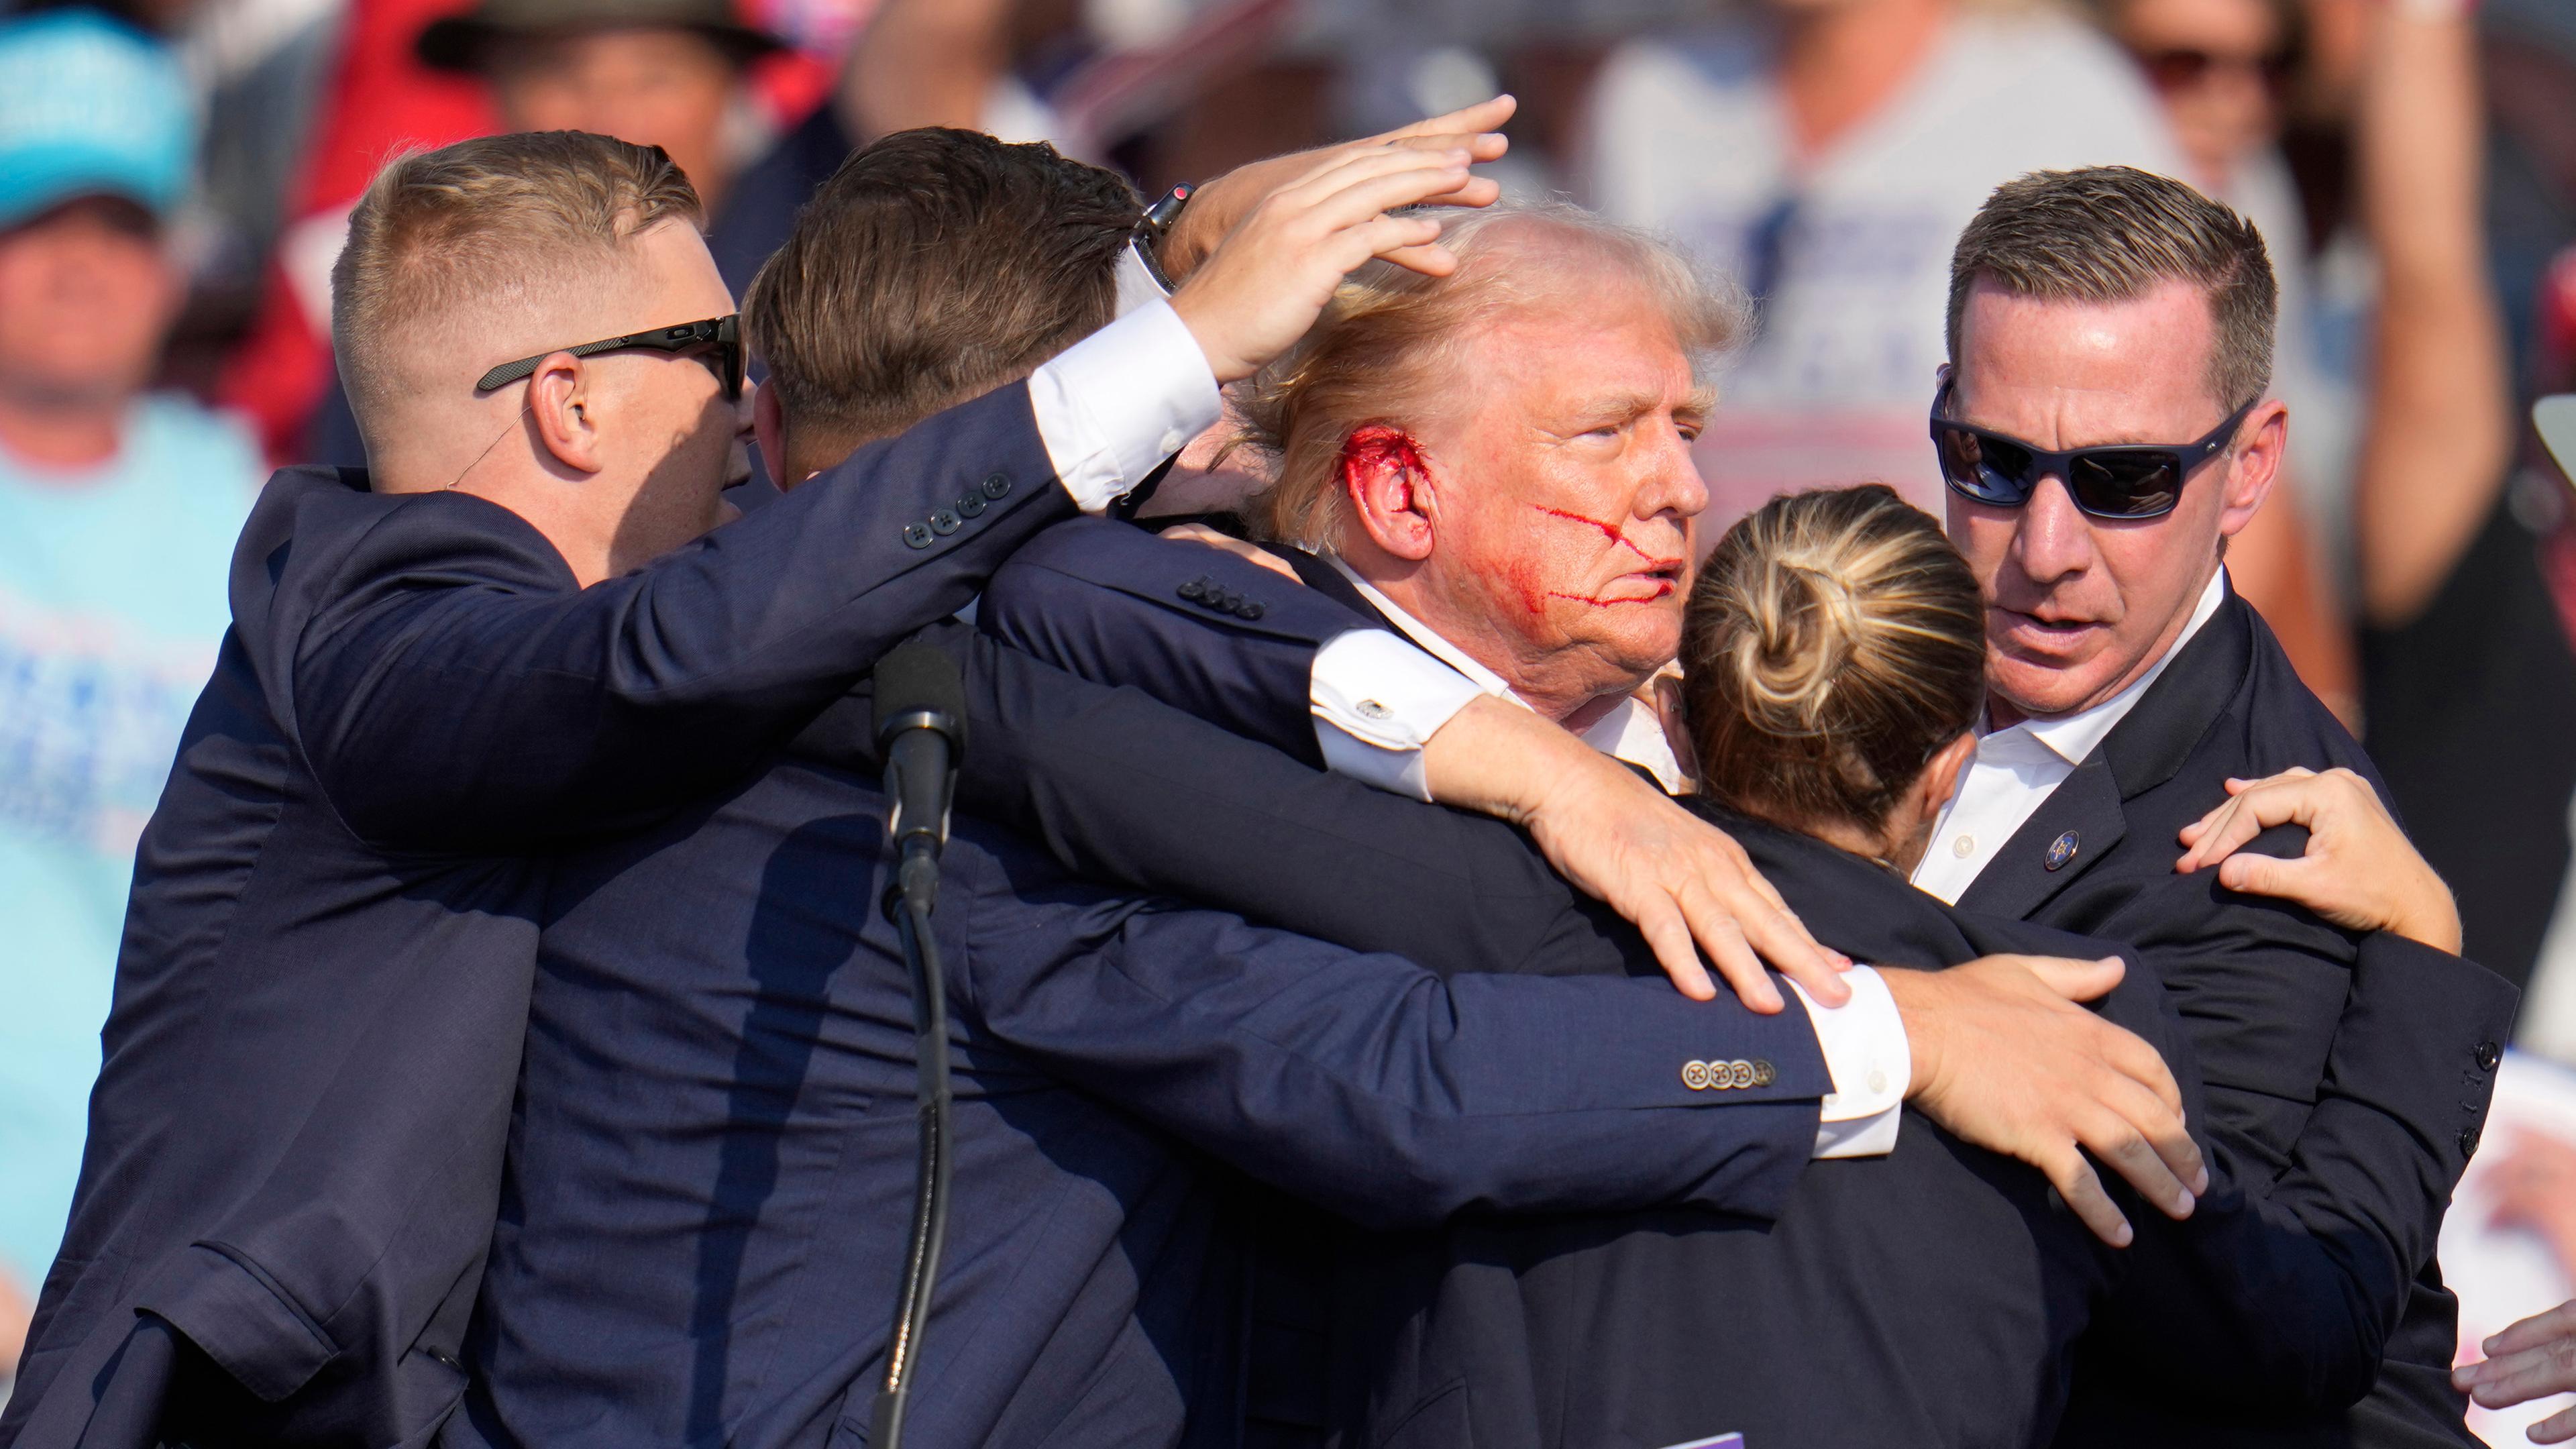 Der republikanische Präsidentschaftsbewerber und frühere US-Präsident Donald Trump wird von Agenten des US-Geheimdienstes Secret Service umringt, als ihm bei einer Wahlkampfveranstaltung von der Bühne geholfen wird. 